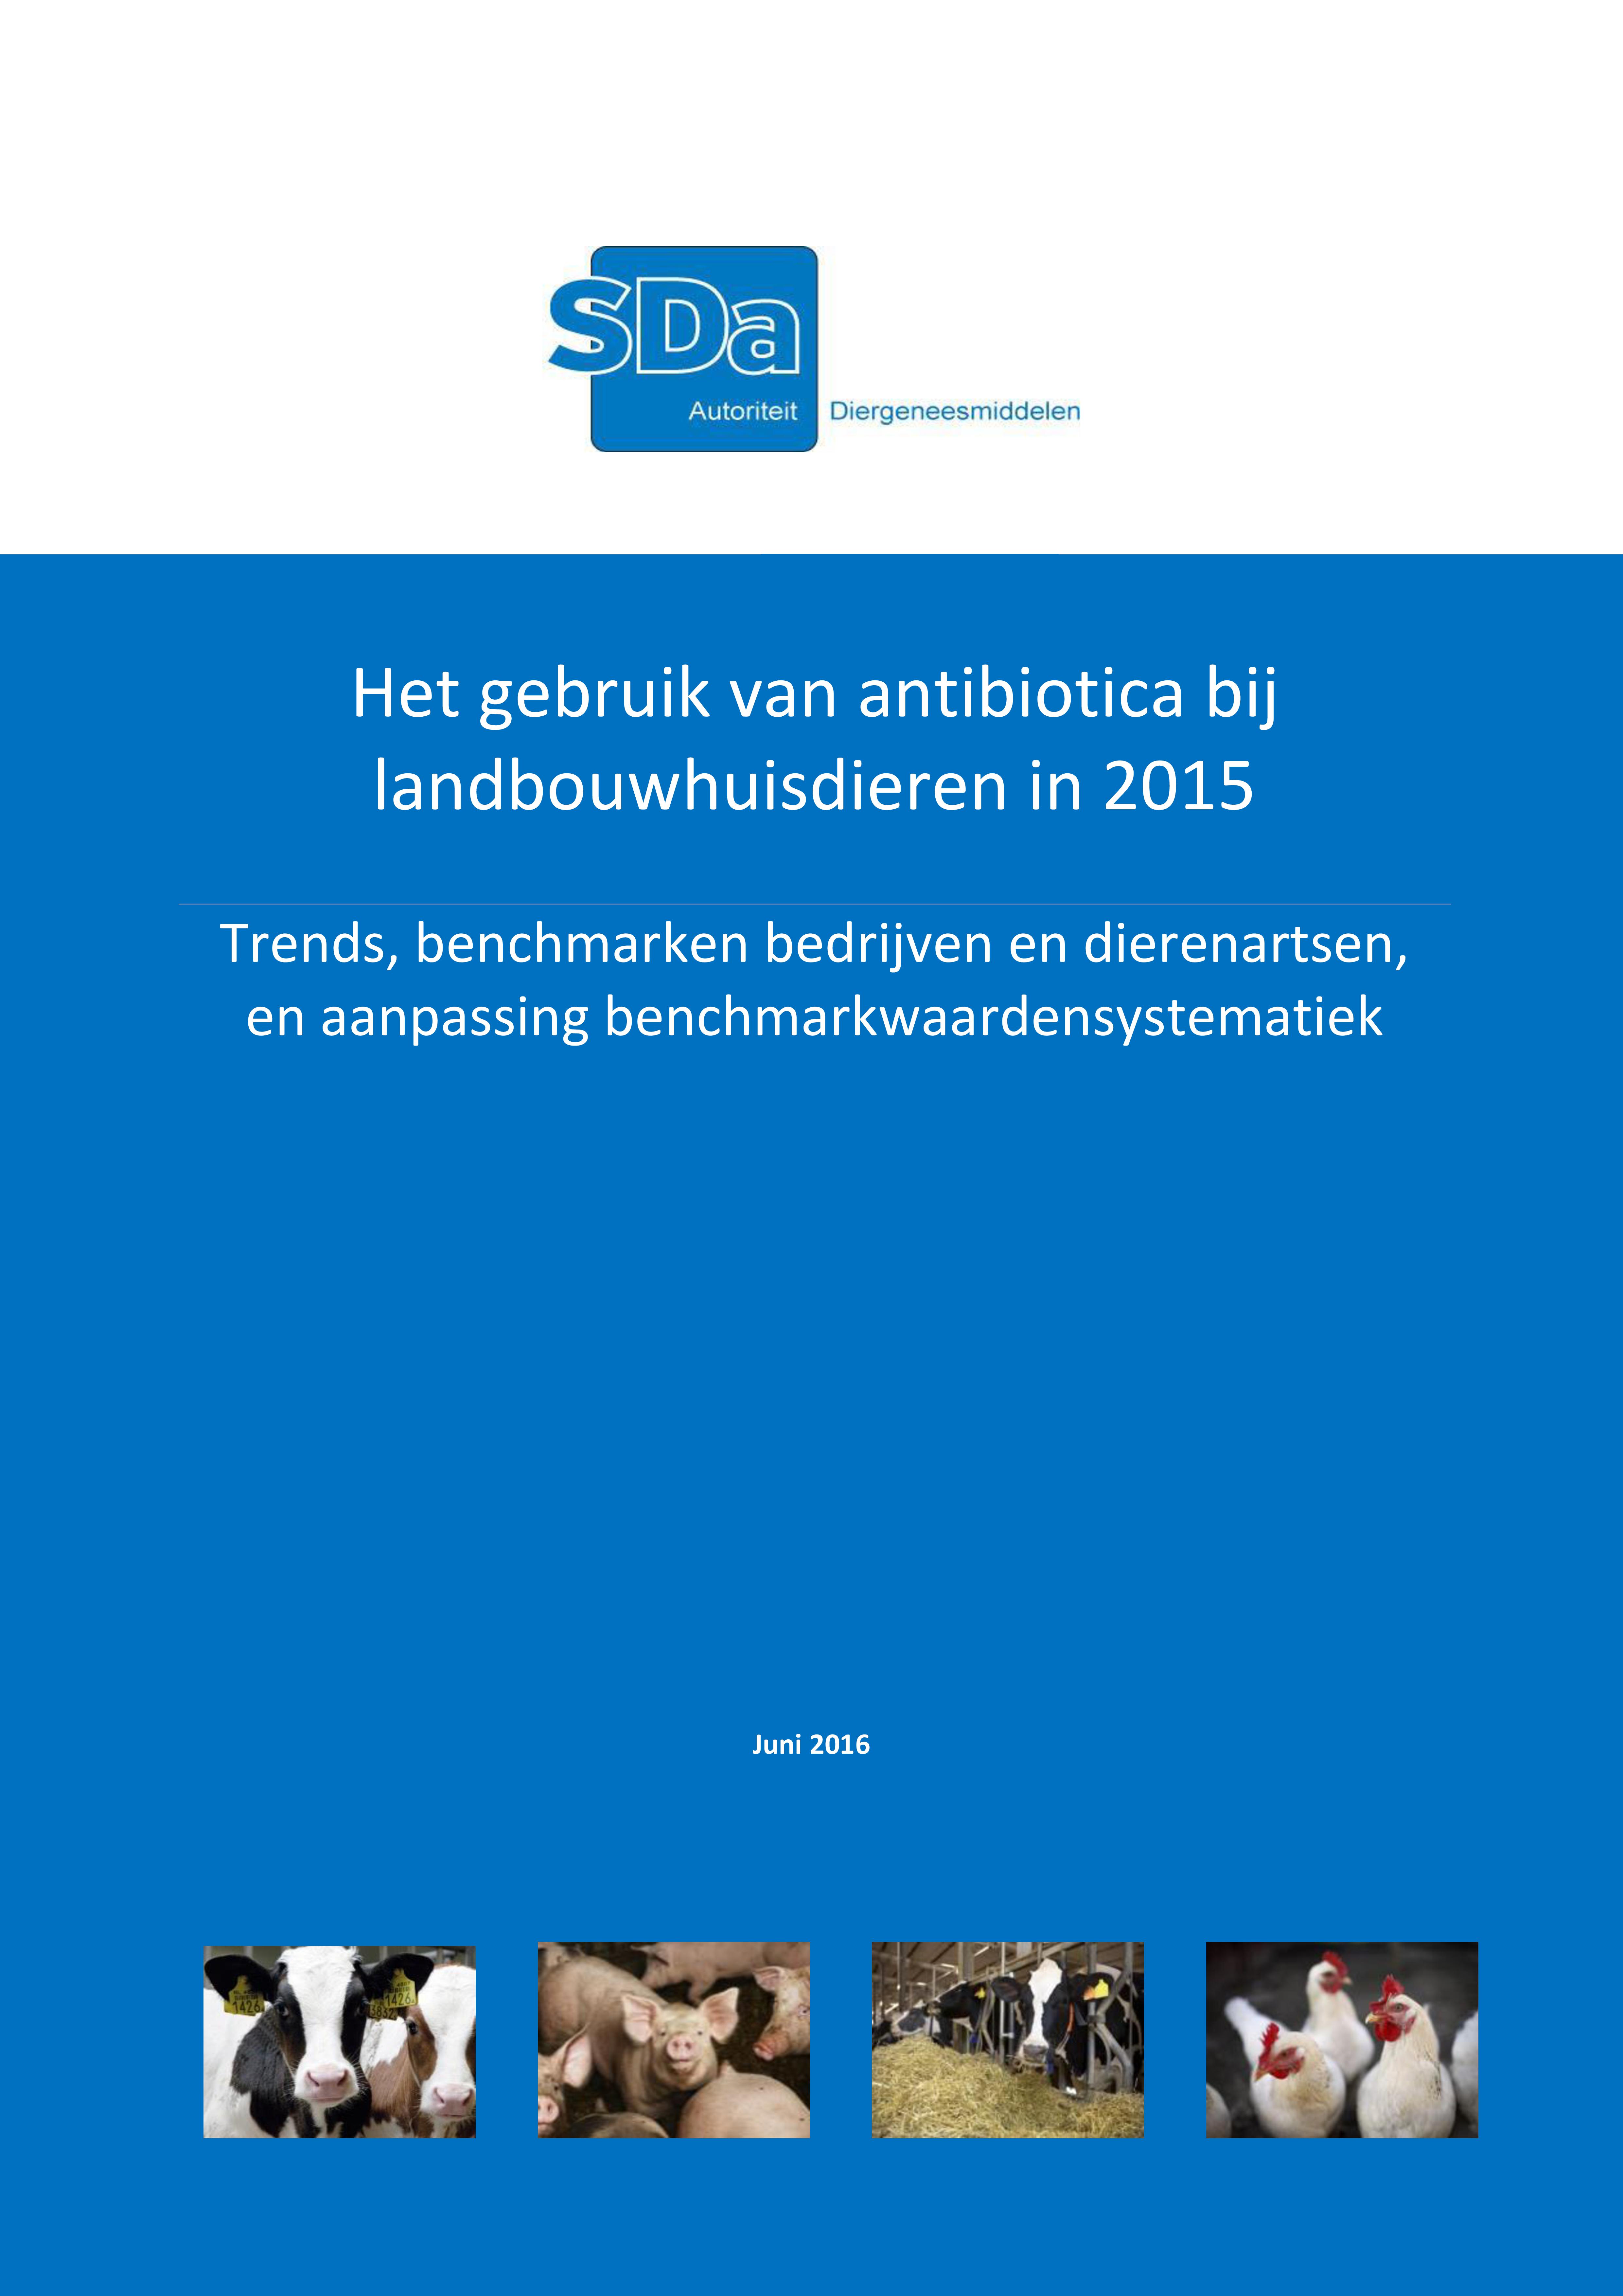 Antibioticagebruik bij landbouwhuisdieren in 2015 Rapport SDa - Producert.nl